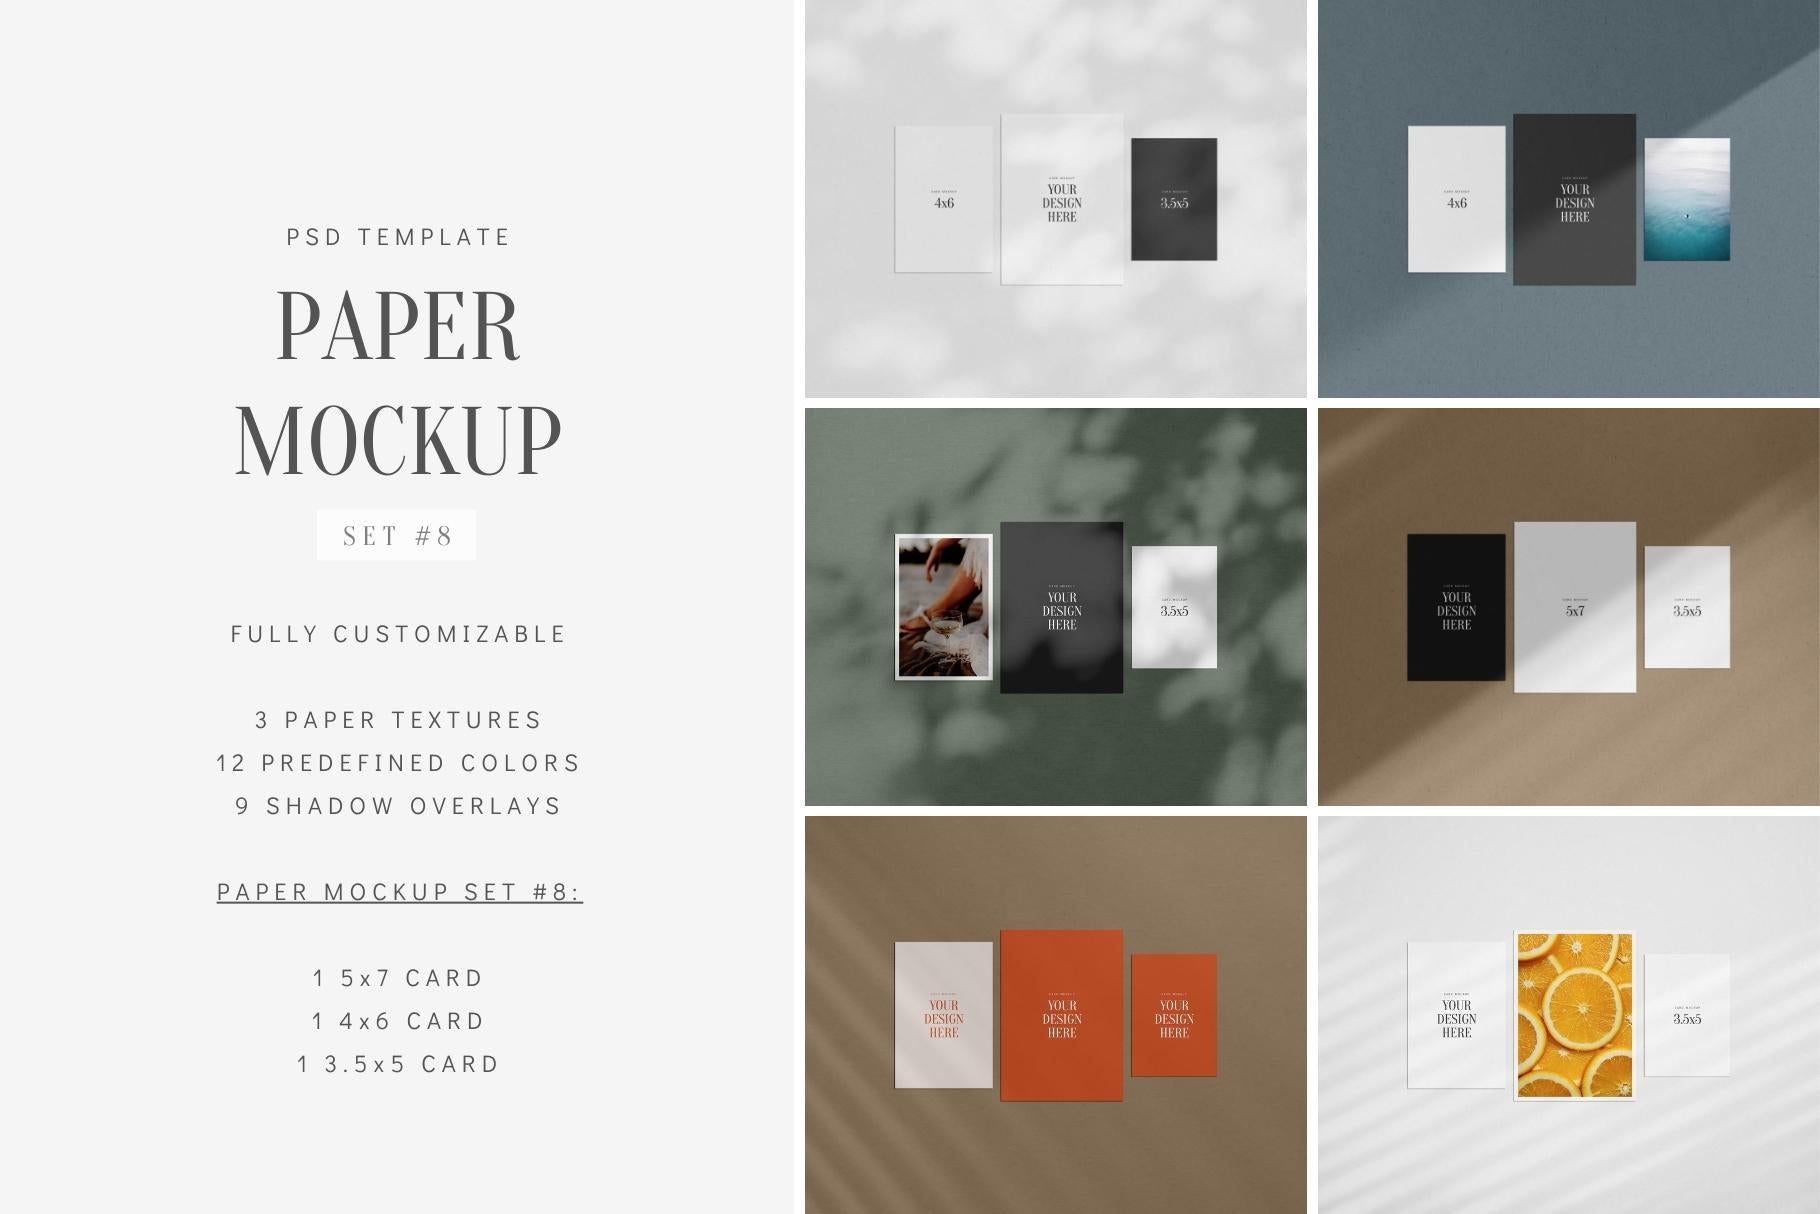 PAPER MOCKUP SET #8 | Card Mockup: 4x6, 5x7, 3.5x5 | PSD Mockup